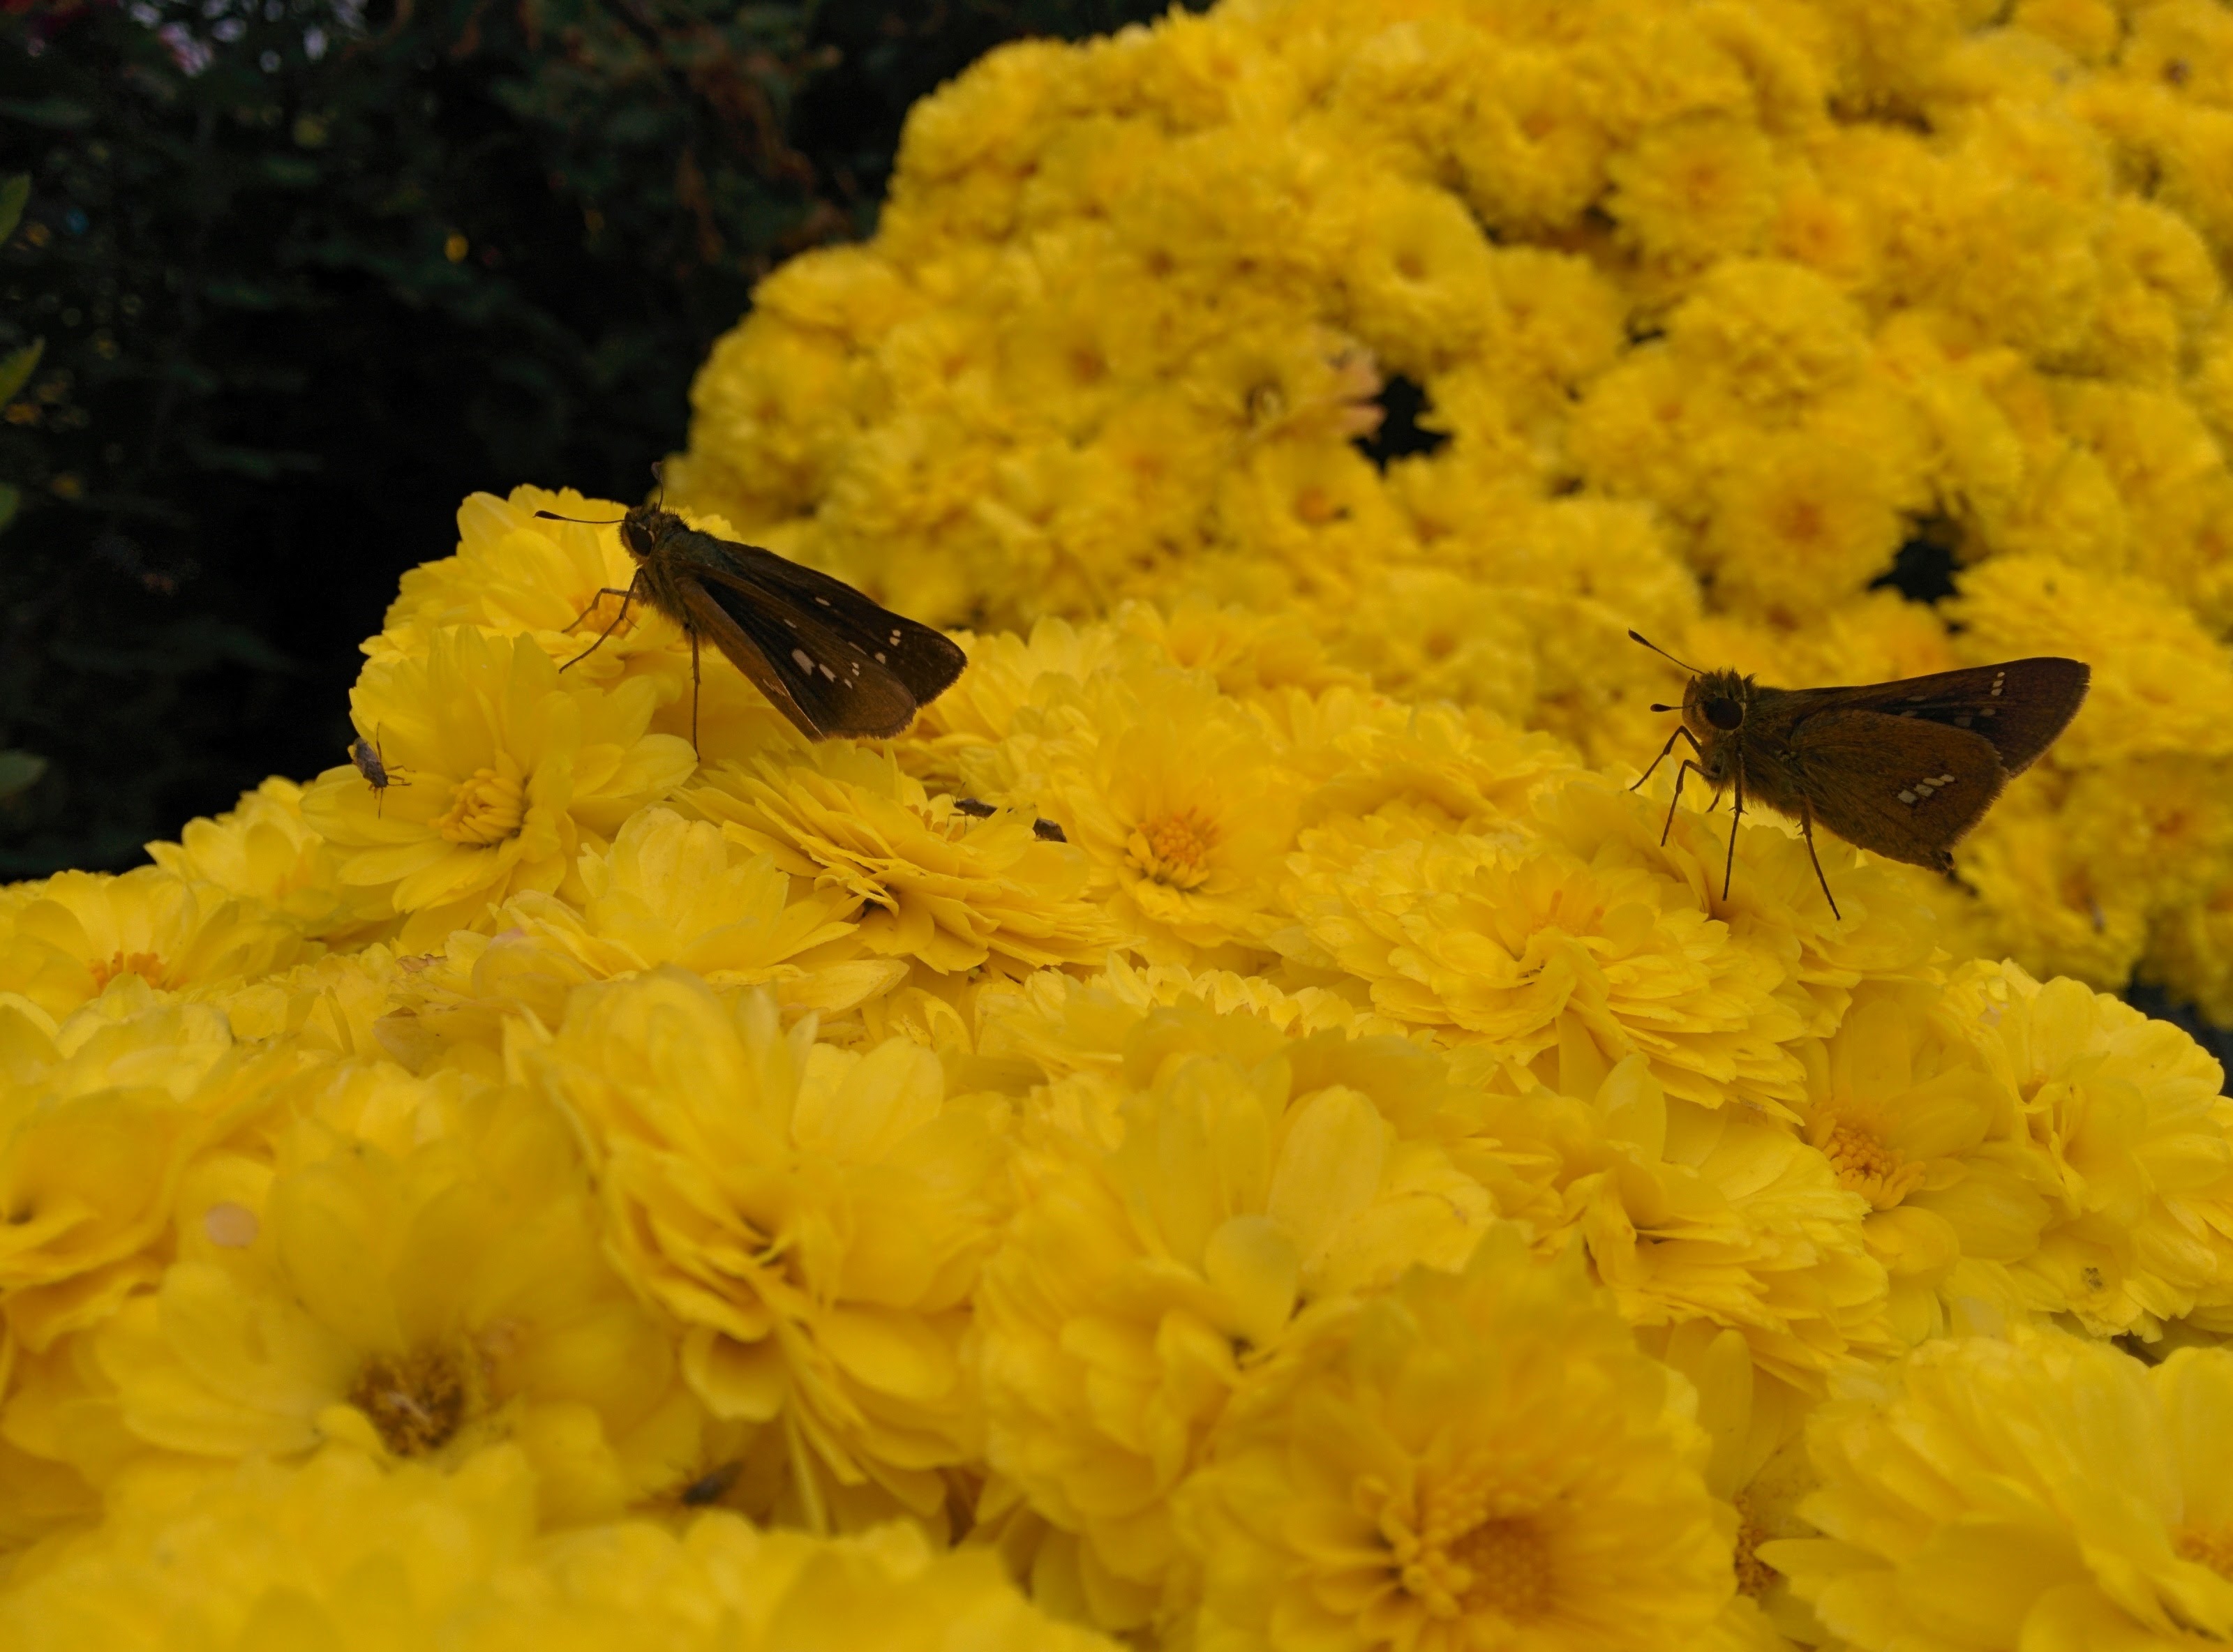 IMG_20151024_122953.jpg 노란 국화꽃의 줄점팔랑나비 두마리